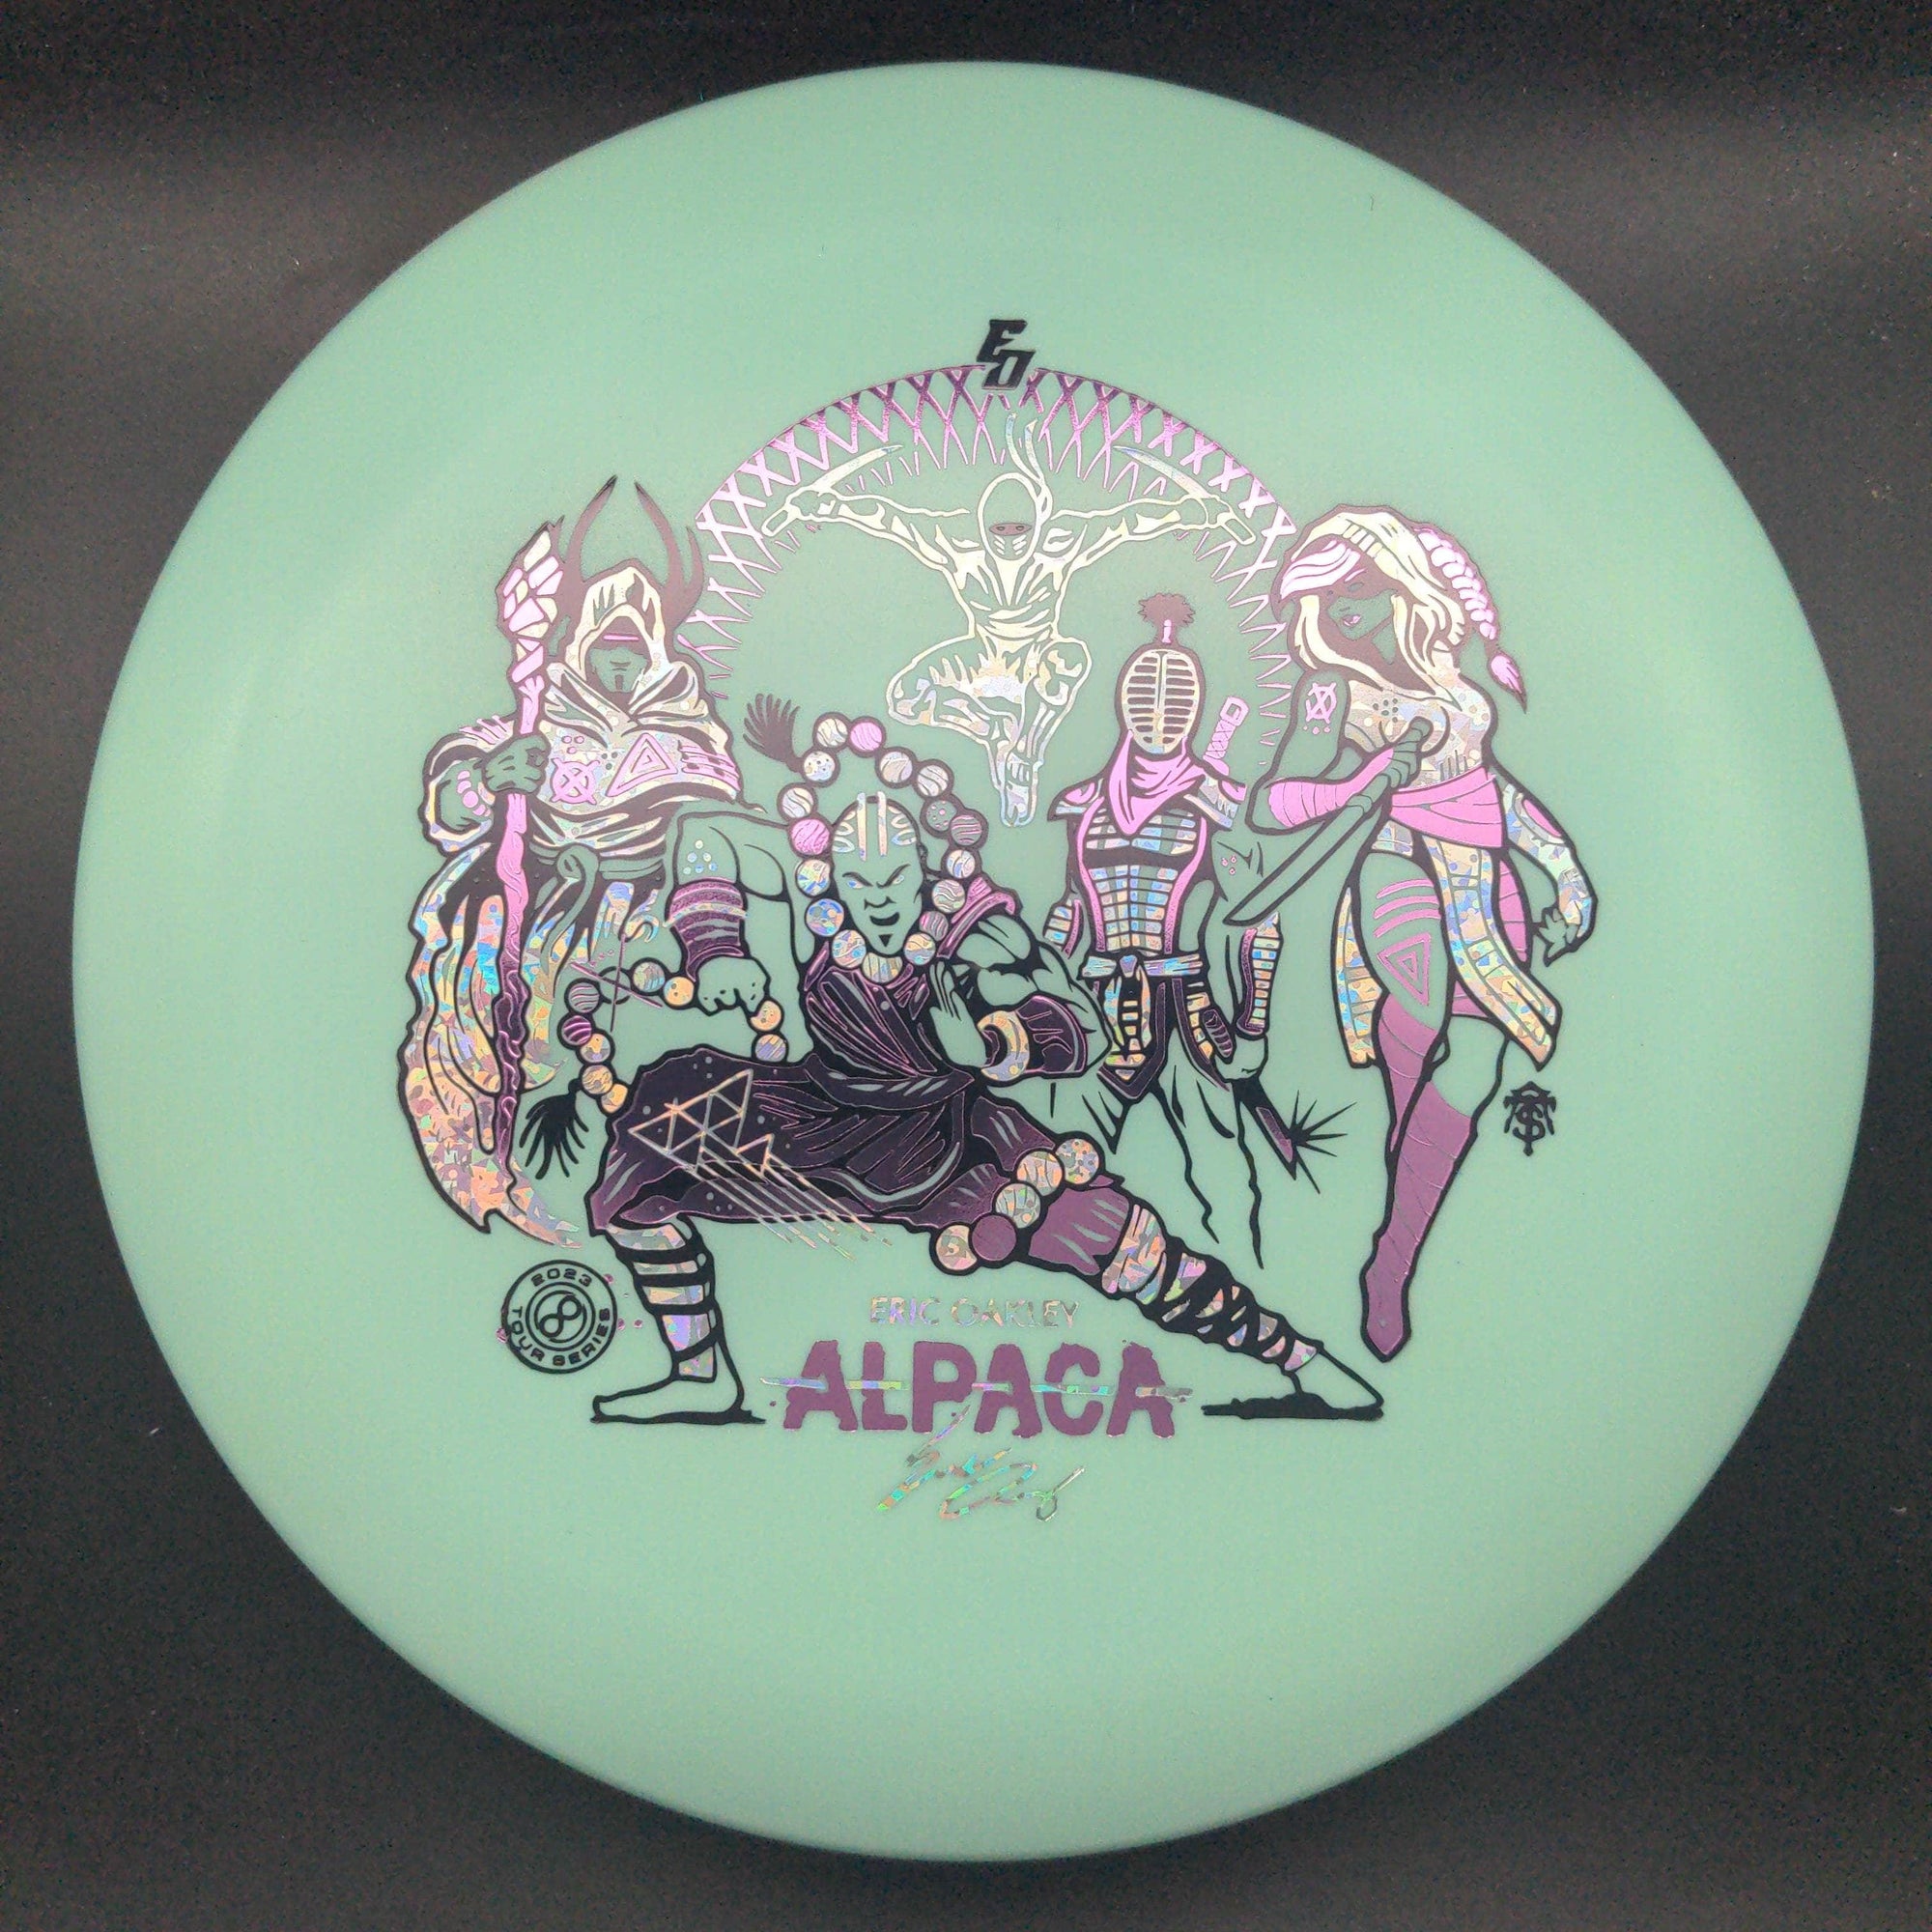 Infinite Discs Putter Blue Pink/Silver Glitter Stamp 175g Alpaca, Glow P Blend, Eric Oakley 2023